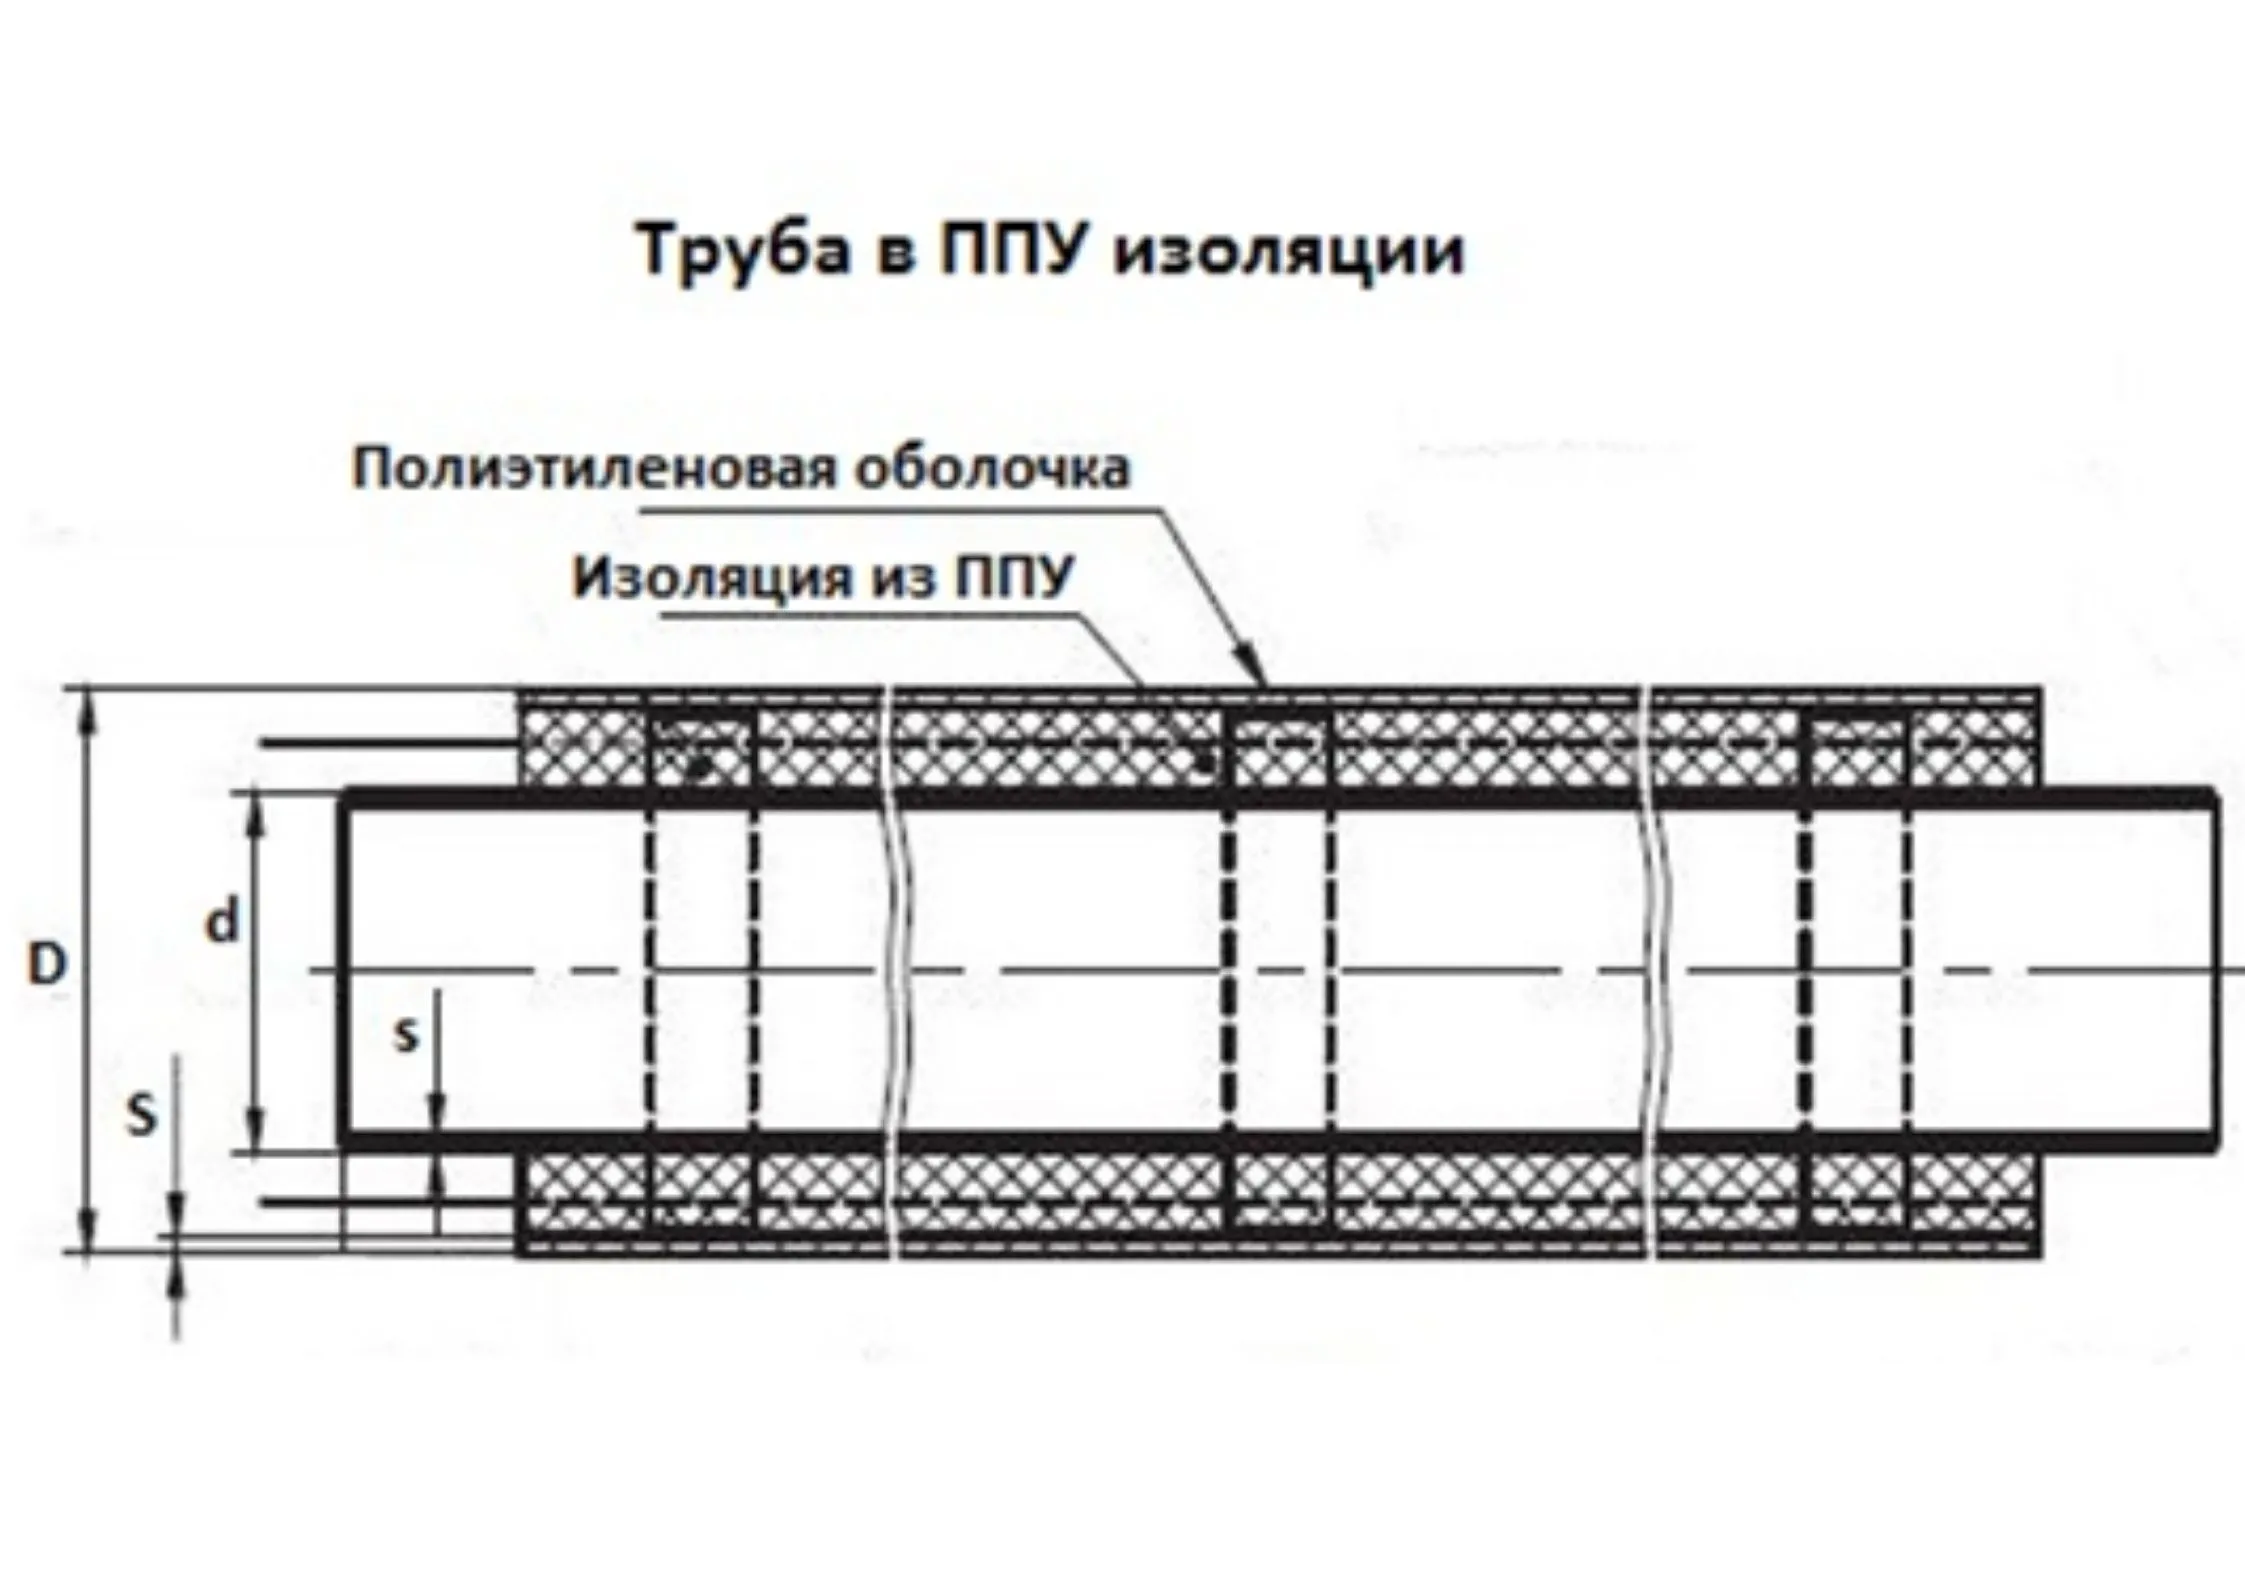 Трубы ППУ 150 в мм «Альфа-тех» в Москве